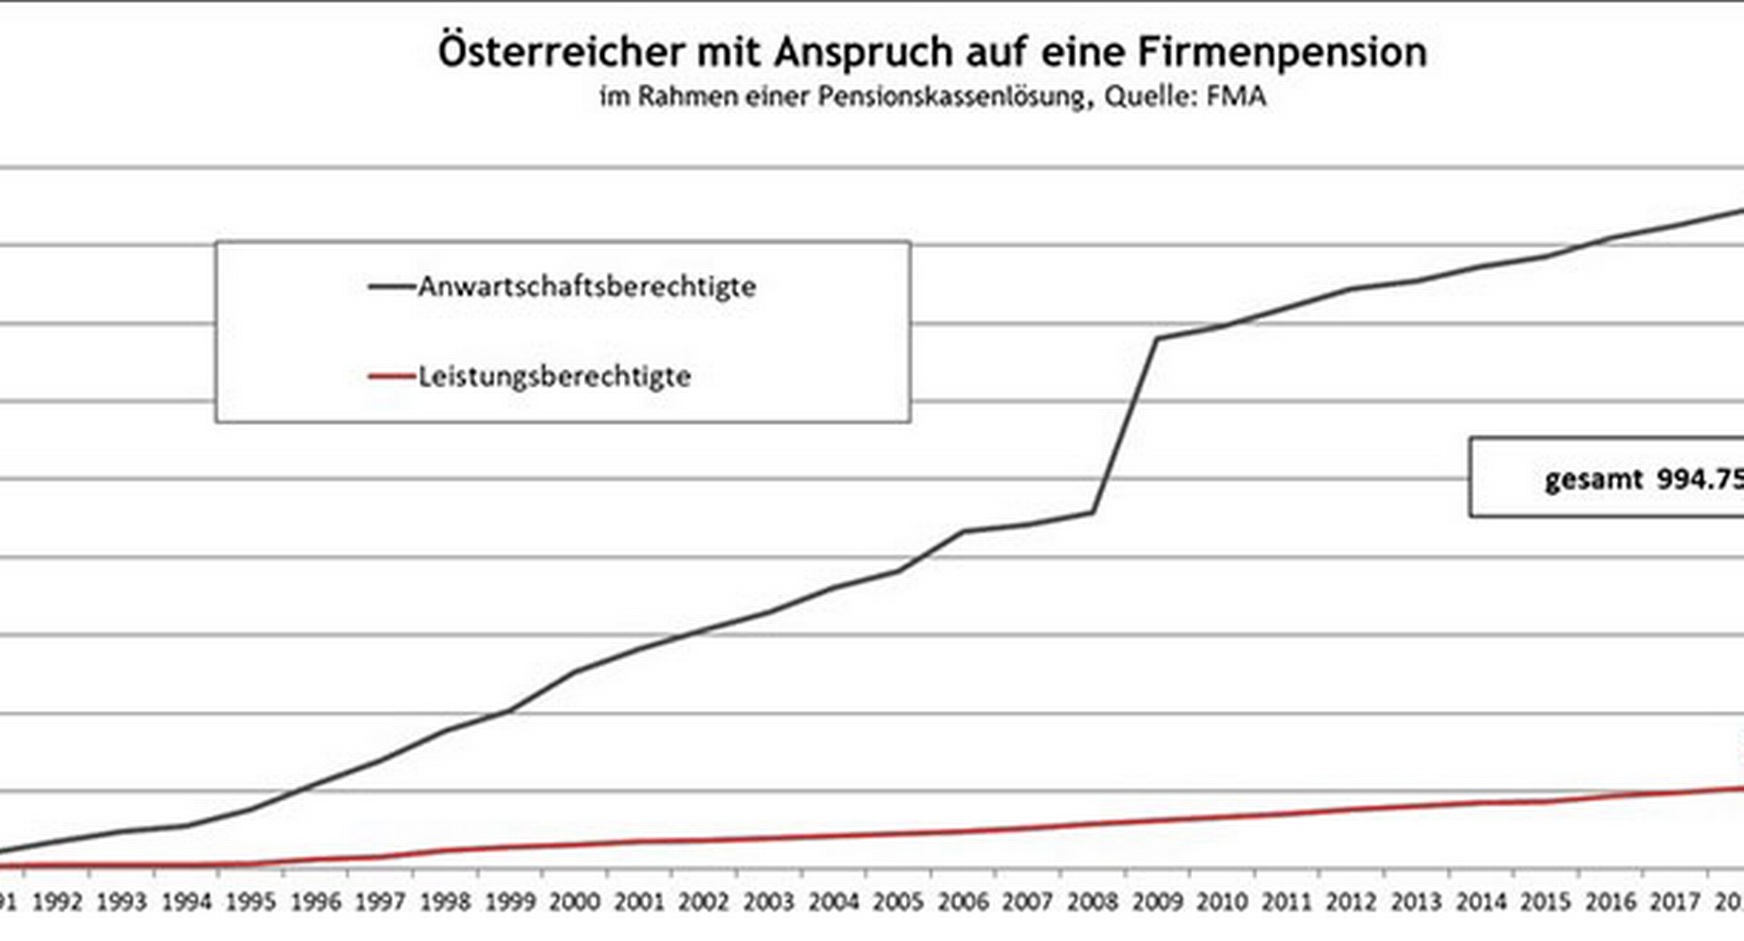 Grafik zu den Österreicherinnen und Österreichern mit Anspruch auf eine Firmenpension im Jahresvergleich von 1991 bis 2020